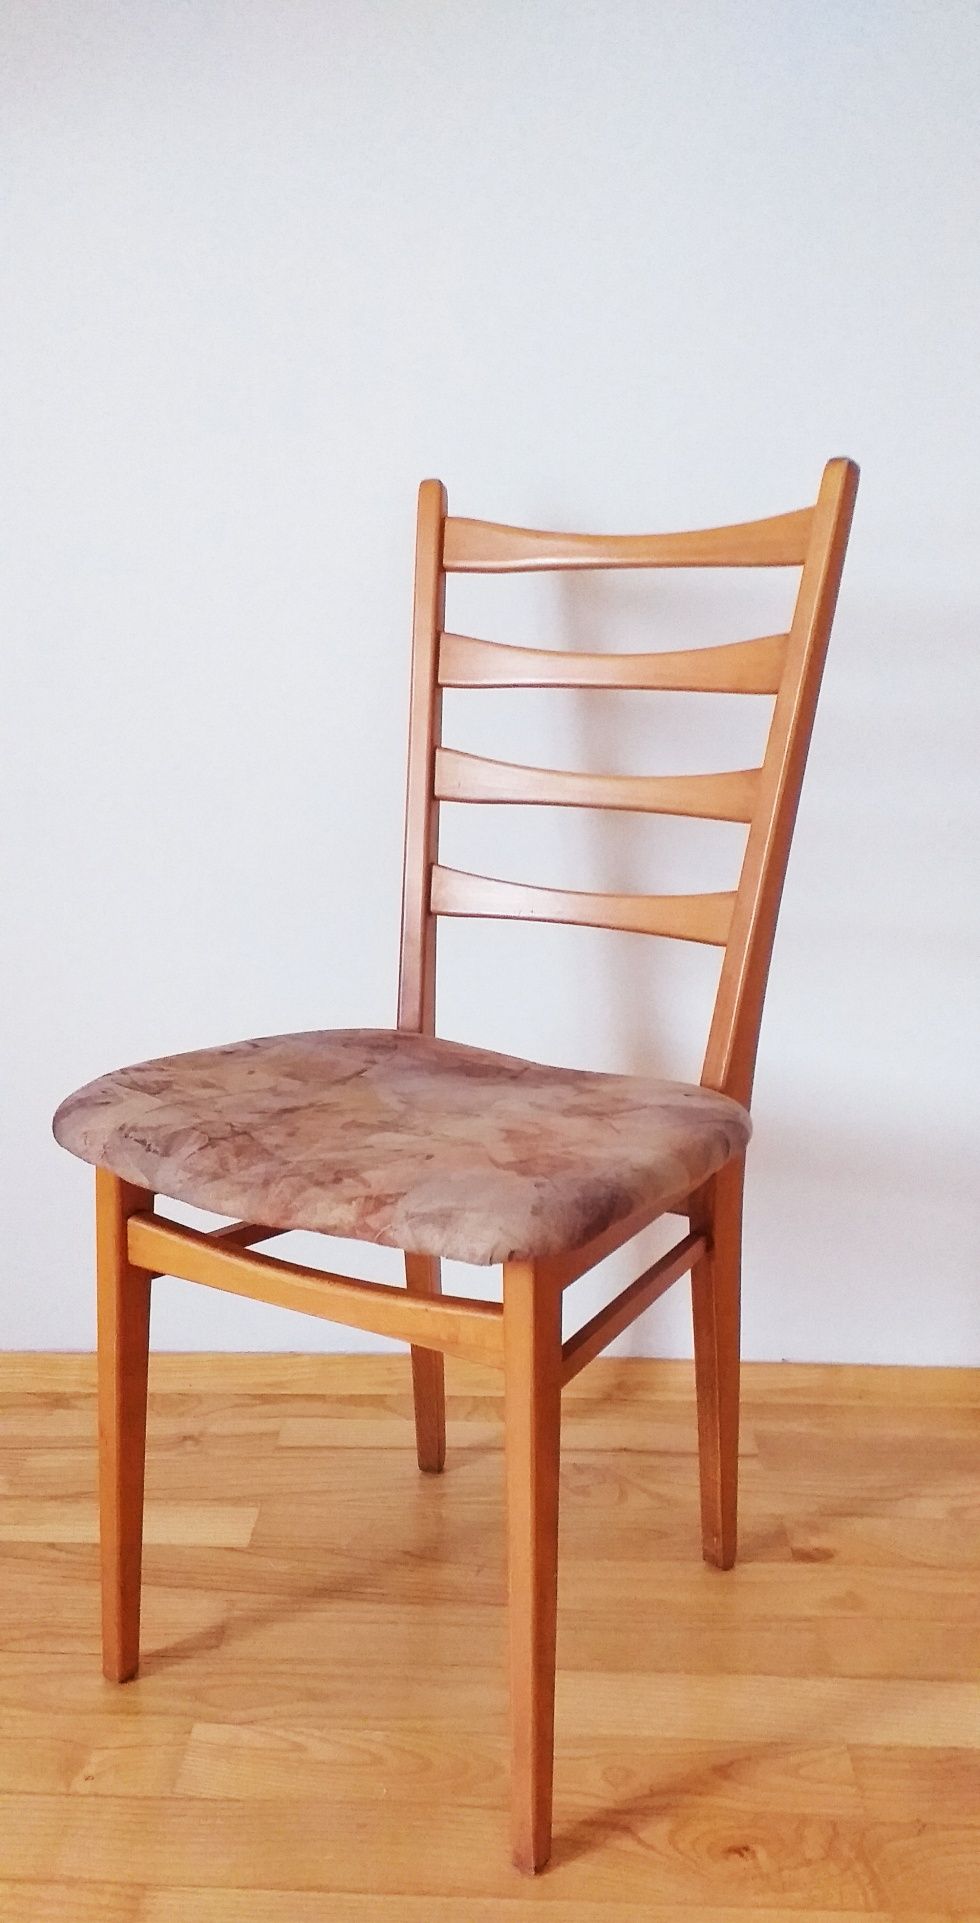 krzesło duńskie krzesło teak krzesło vintage krzesło retro krzesła